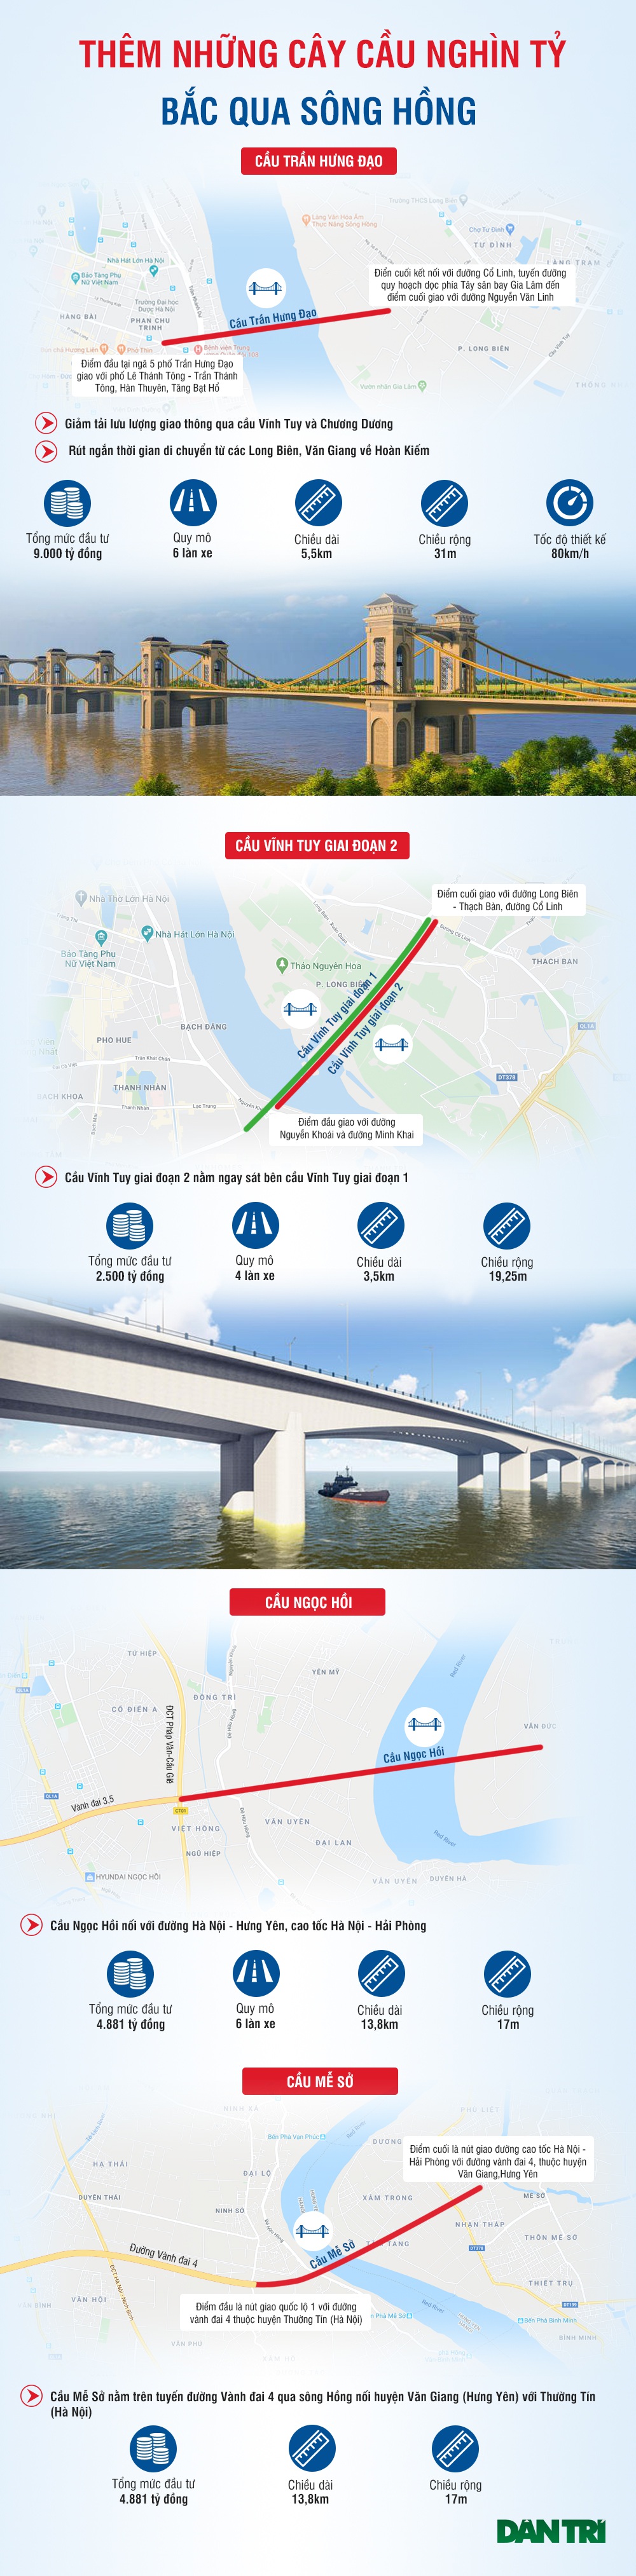 Những cây cầu nghìn tỷ bắc qua sông Hồng sắp được xây dựng ở Hà Nội